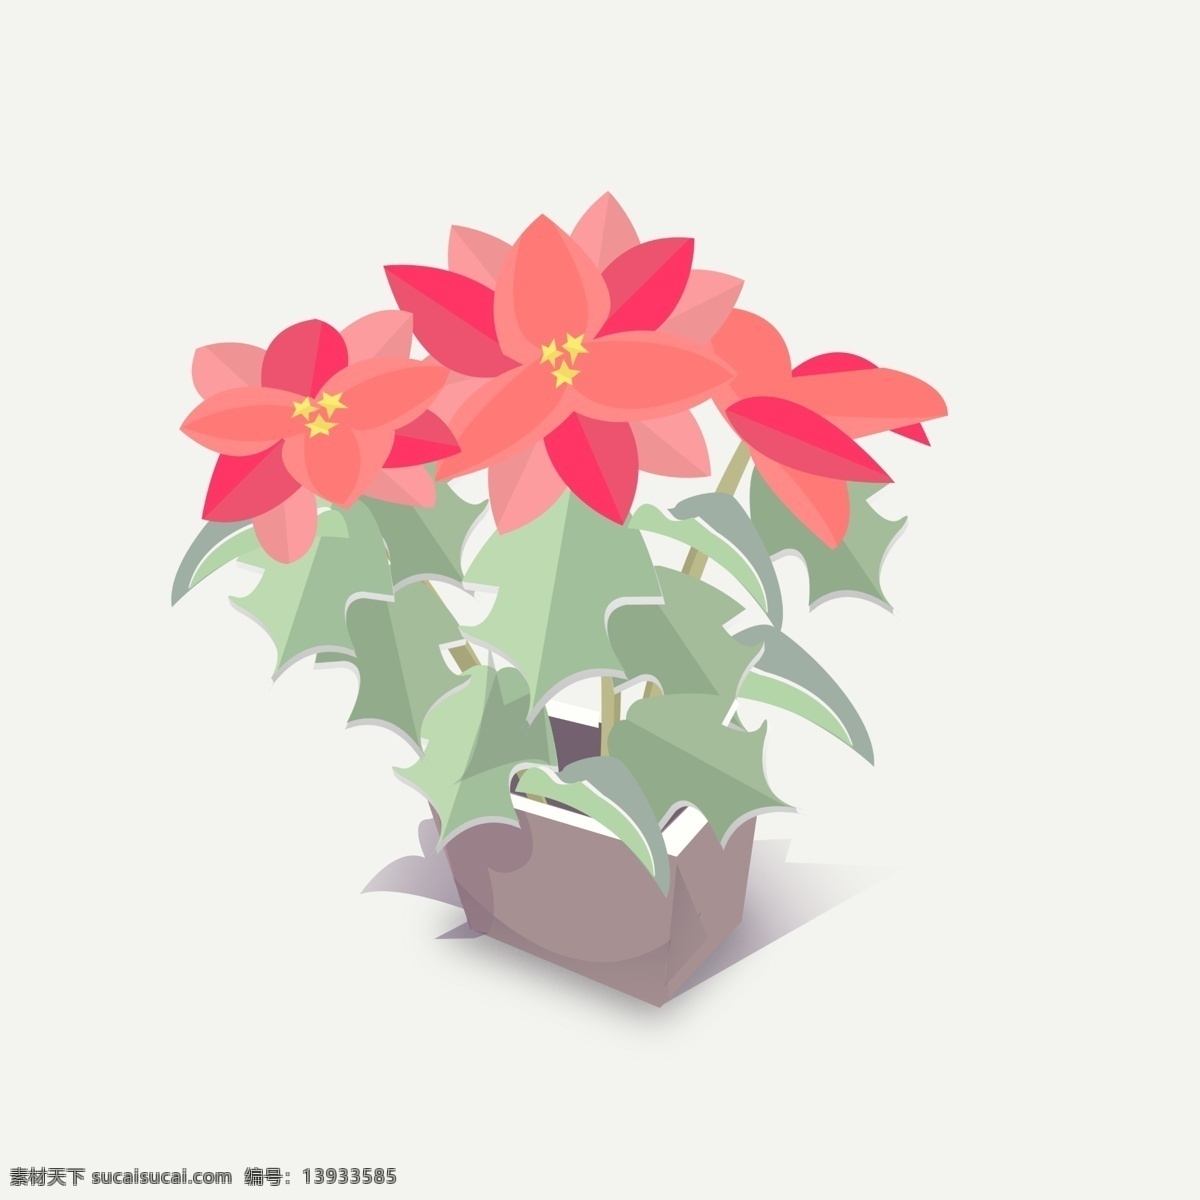 春节 应景 花卉 一品红 清新 简洁 图标 装饰 花朵 花 红色 盆栽 手绘 盆景 摆件 植物 春节应景 可爱花朵 可爱